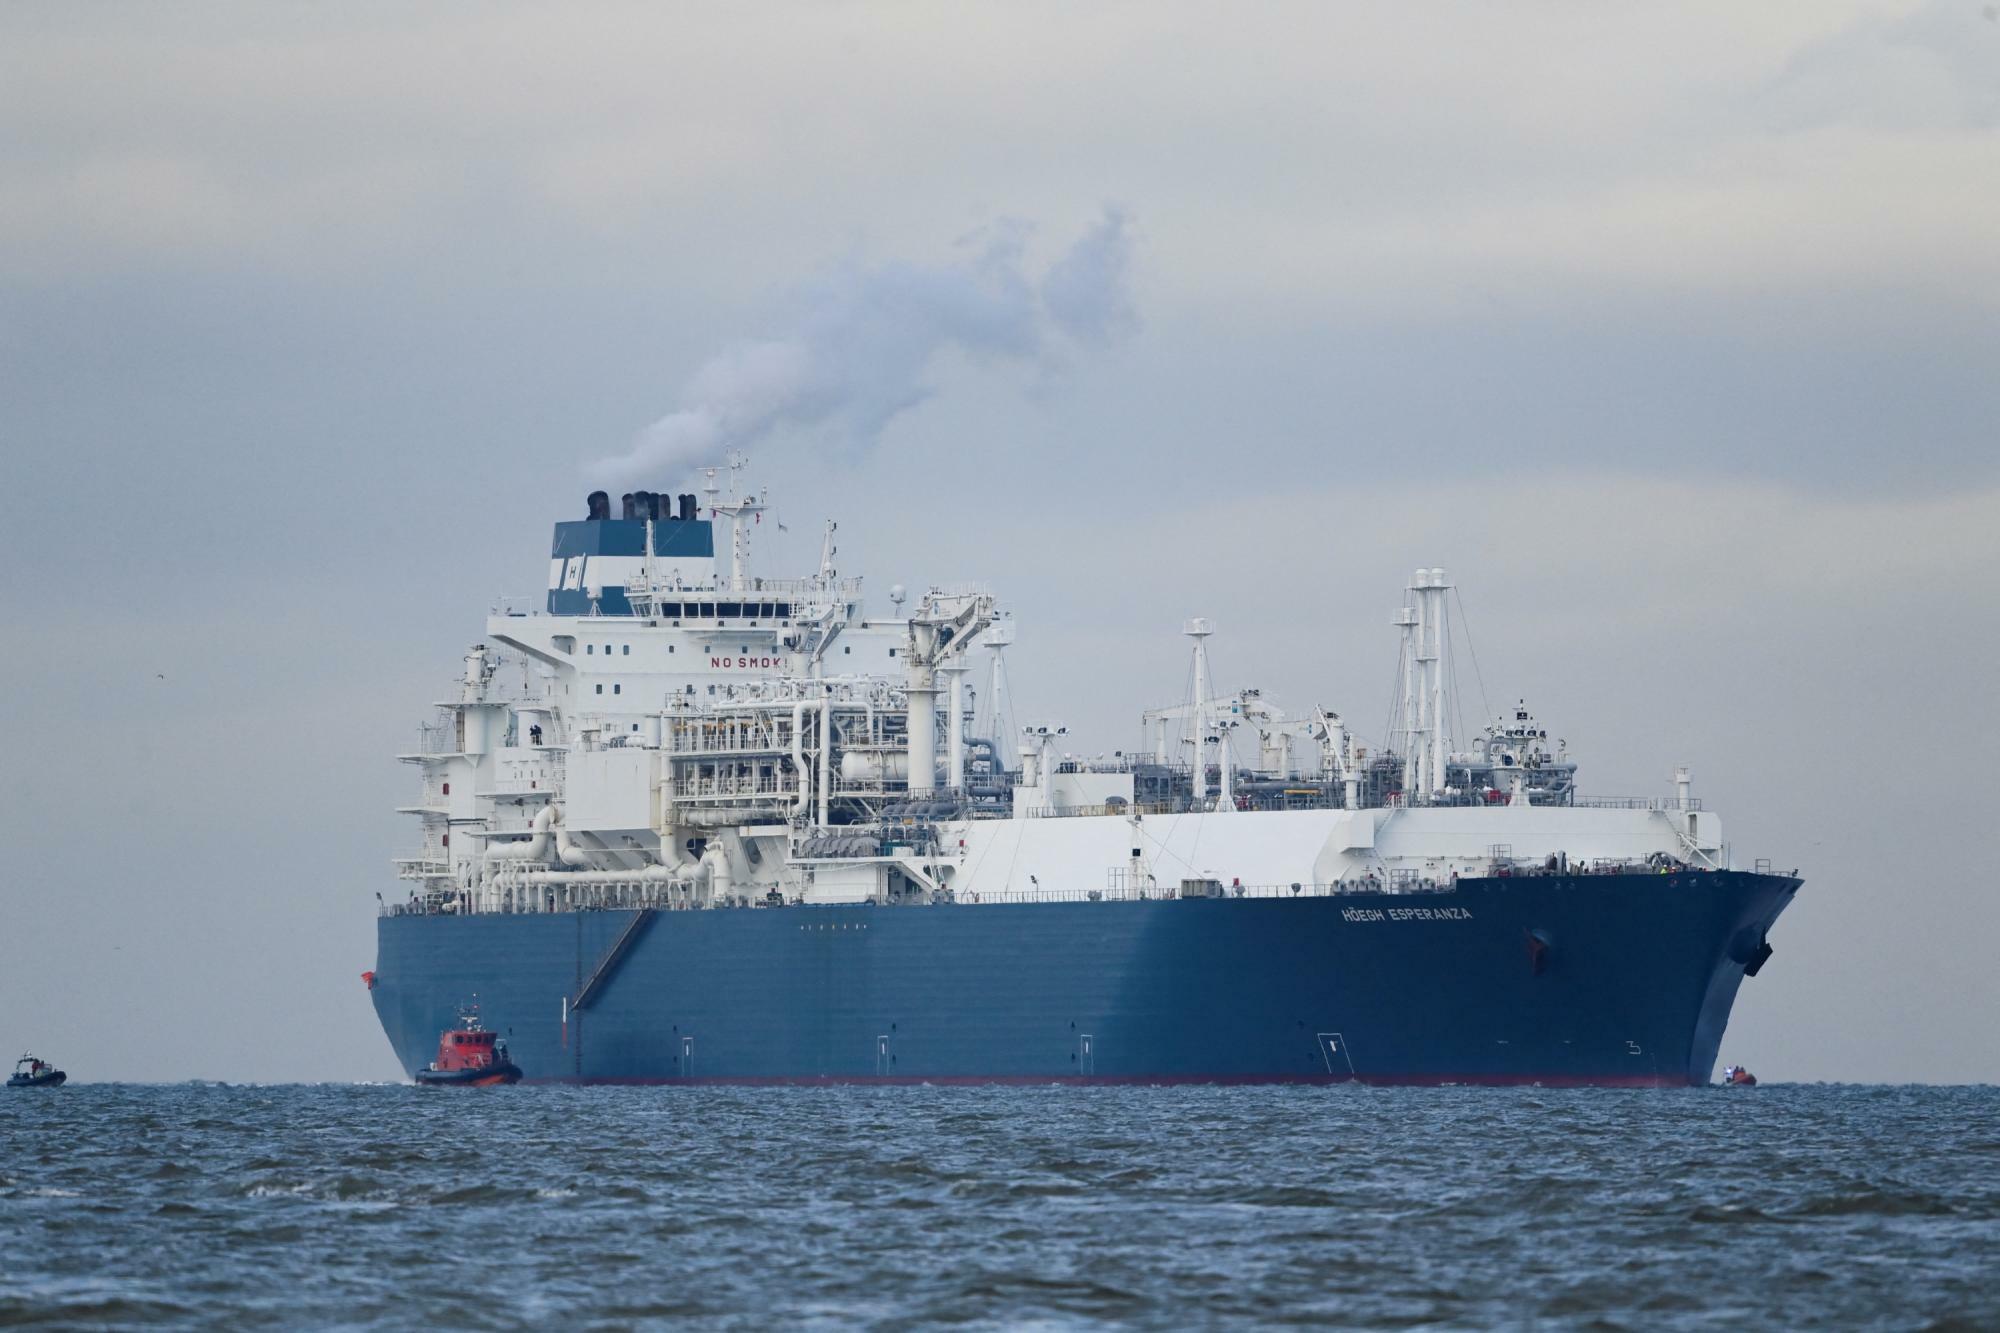 浮体式貯蔵再ガス化装置（FSRU）船「ホーグ・エスペランサ」がタグボートに誘導され、ヴィルヘルムスハーフェン港に到着した。2022年12月15日